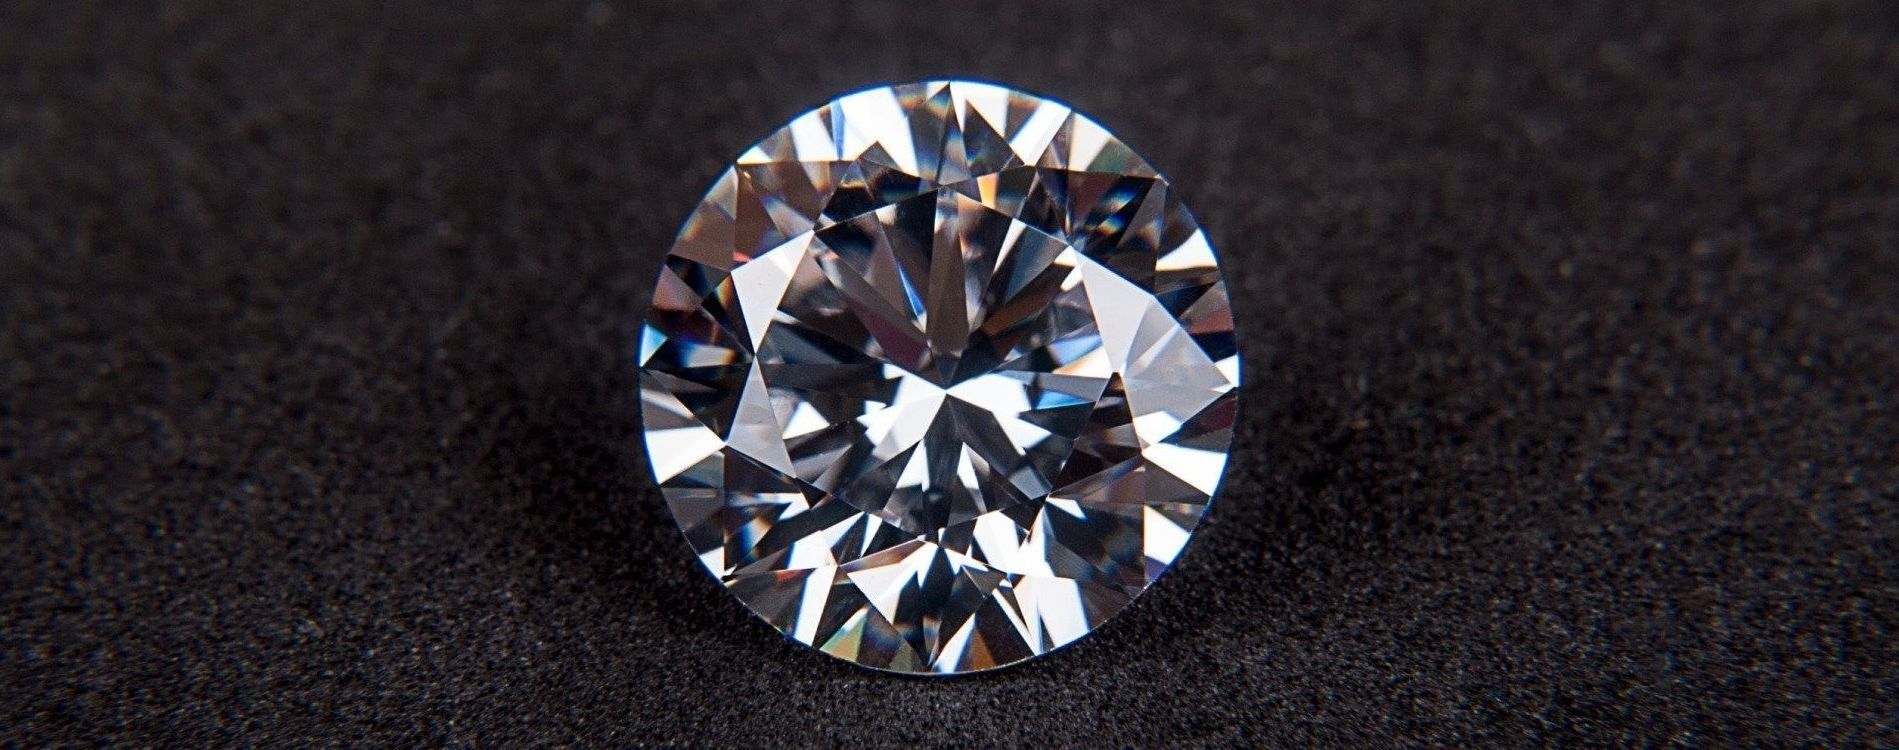 Муассаніти - штучні діаманти (мусаніт)
Продам мусаніти -штучні діамант